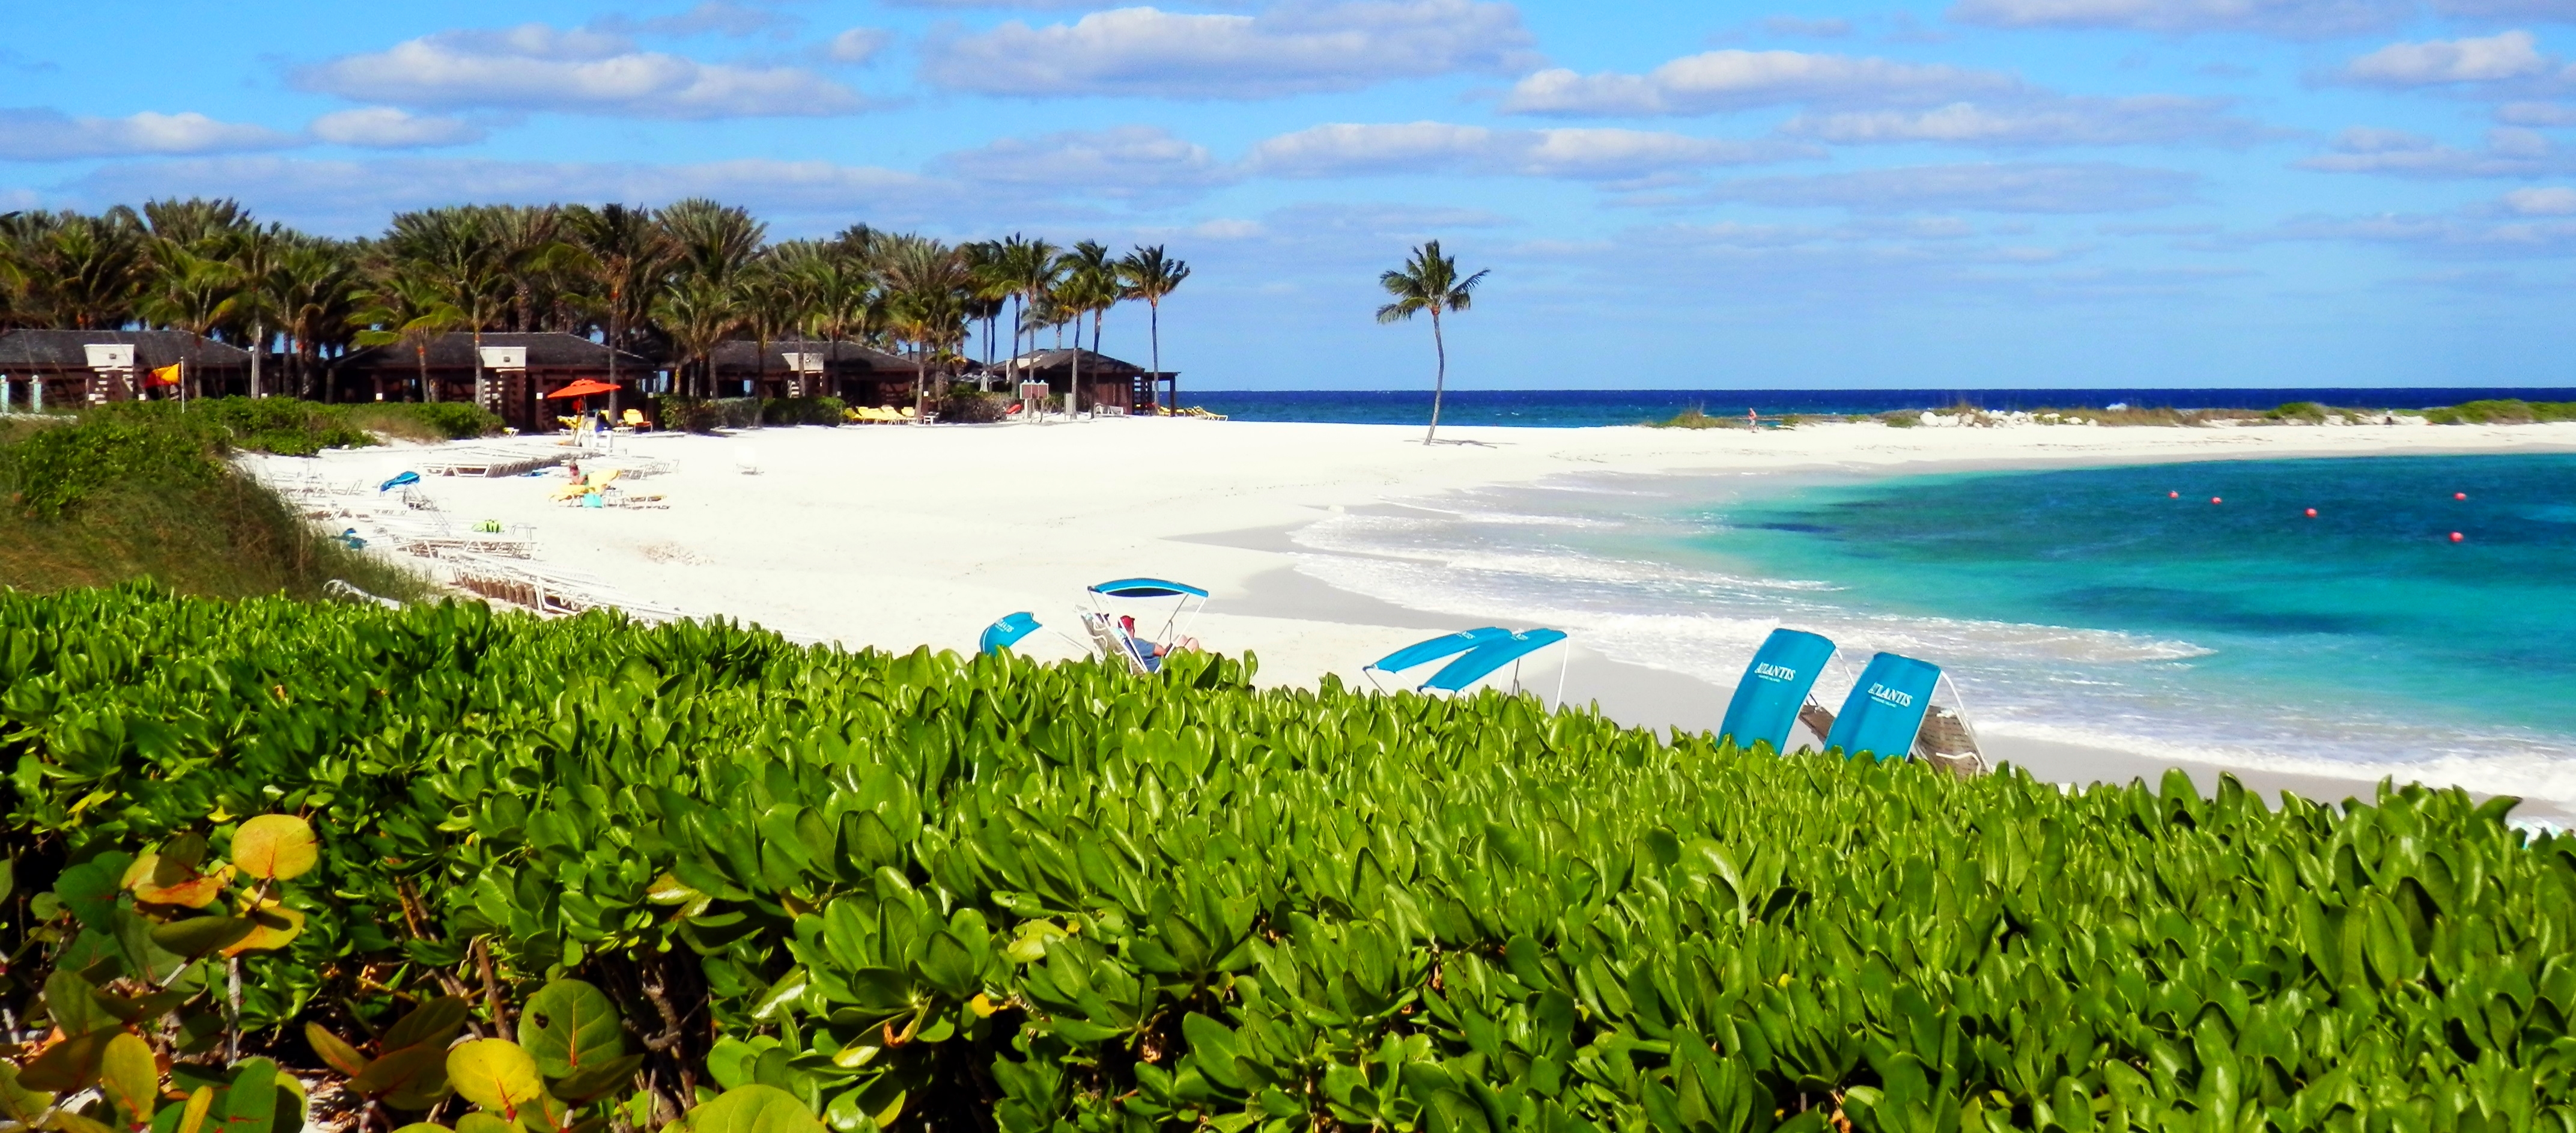 Bahamas: The Sound of Sunshine